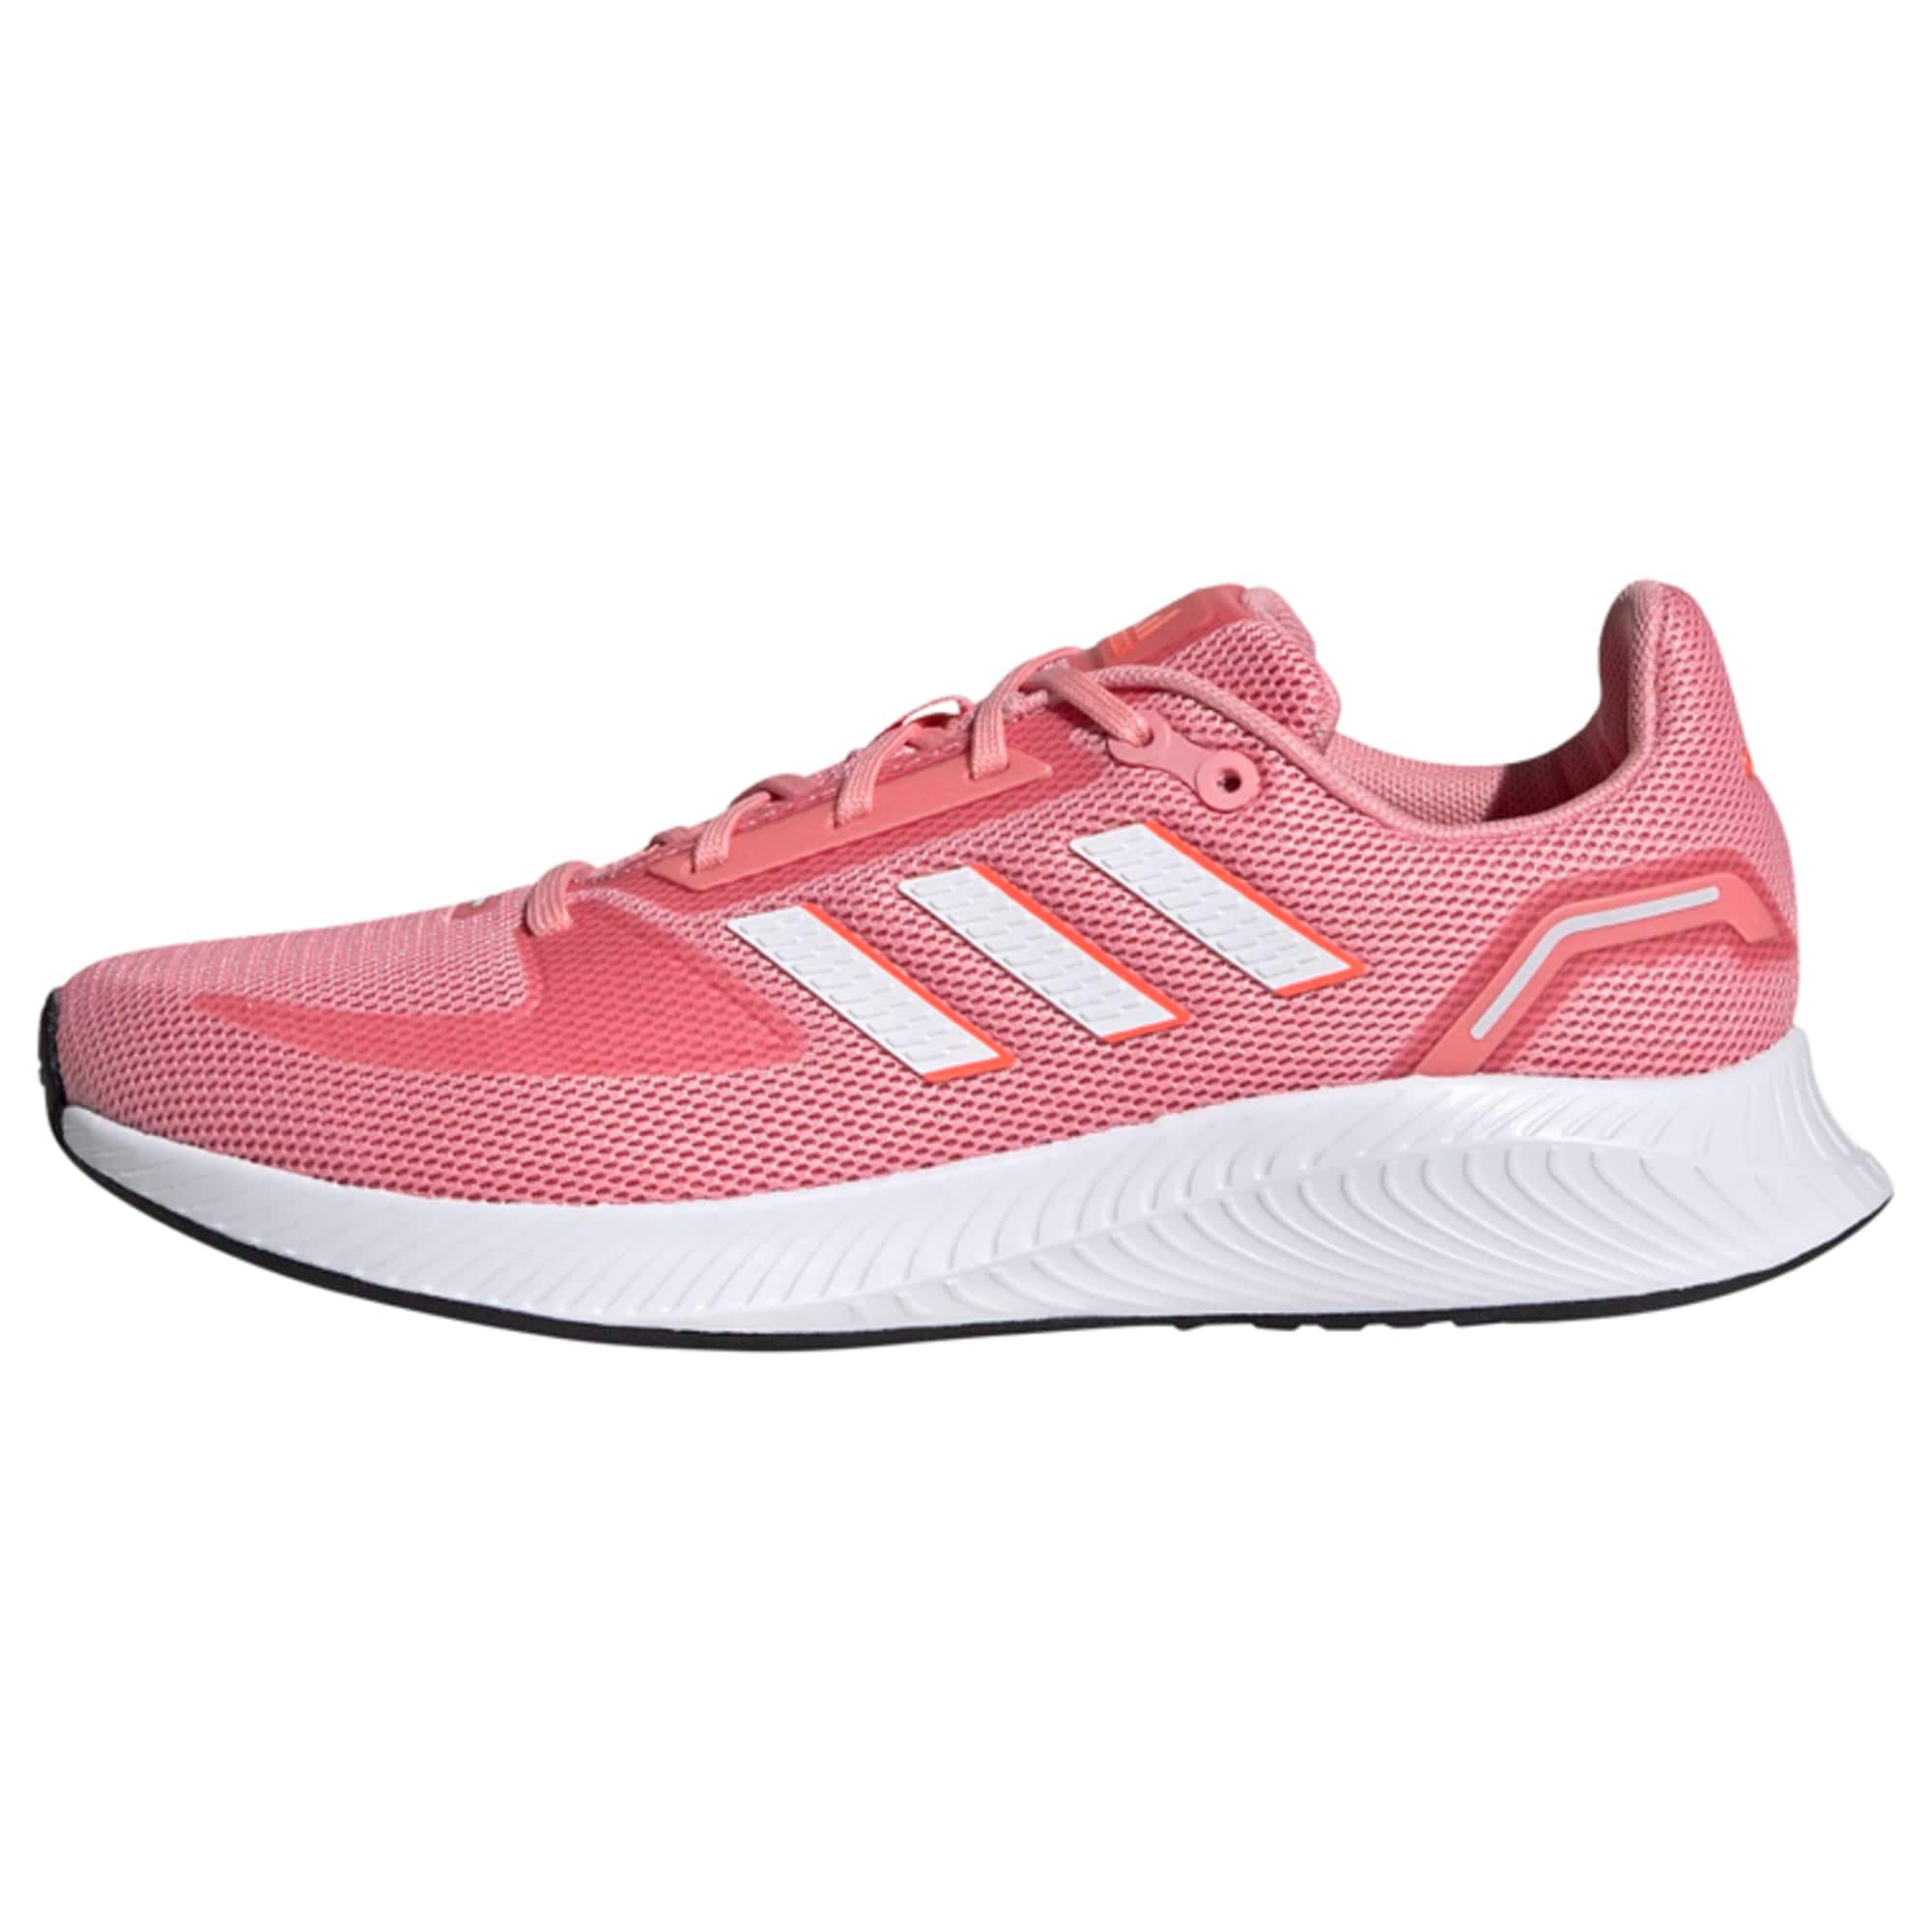 ADIDAS PERFORMANCE Bėgimo batai 'Run Falcon 2.0 '  ryškiai rožinė spalva / rožių spalva / balta